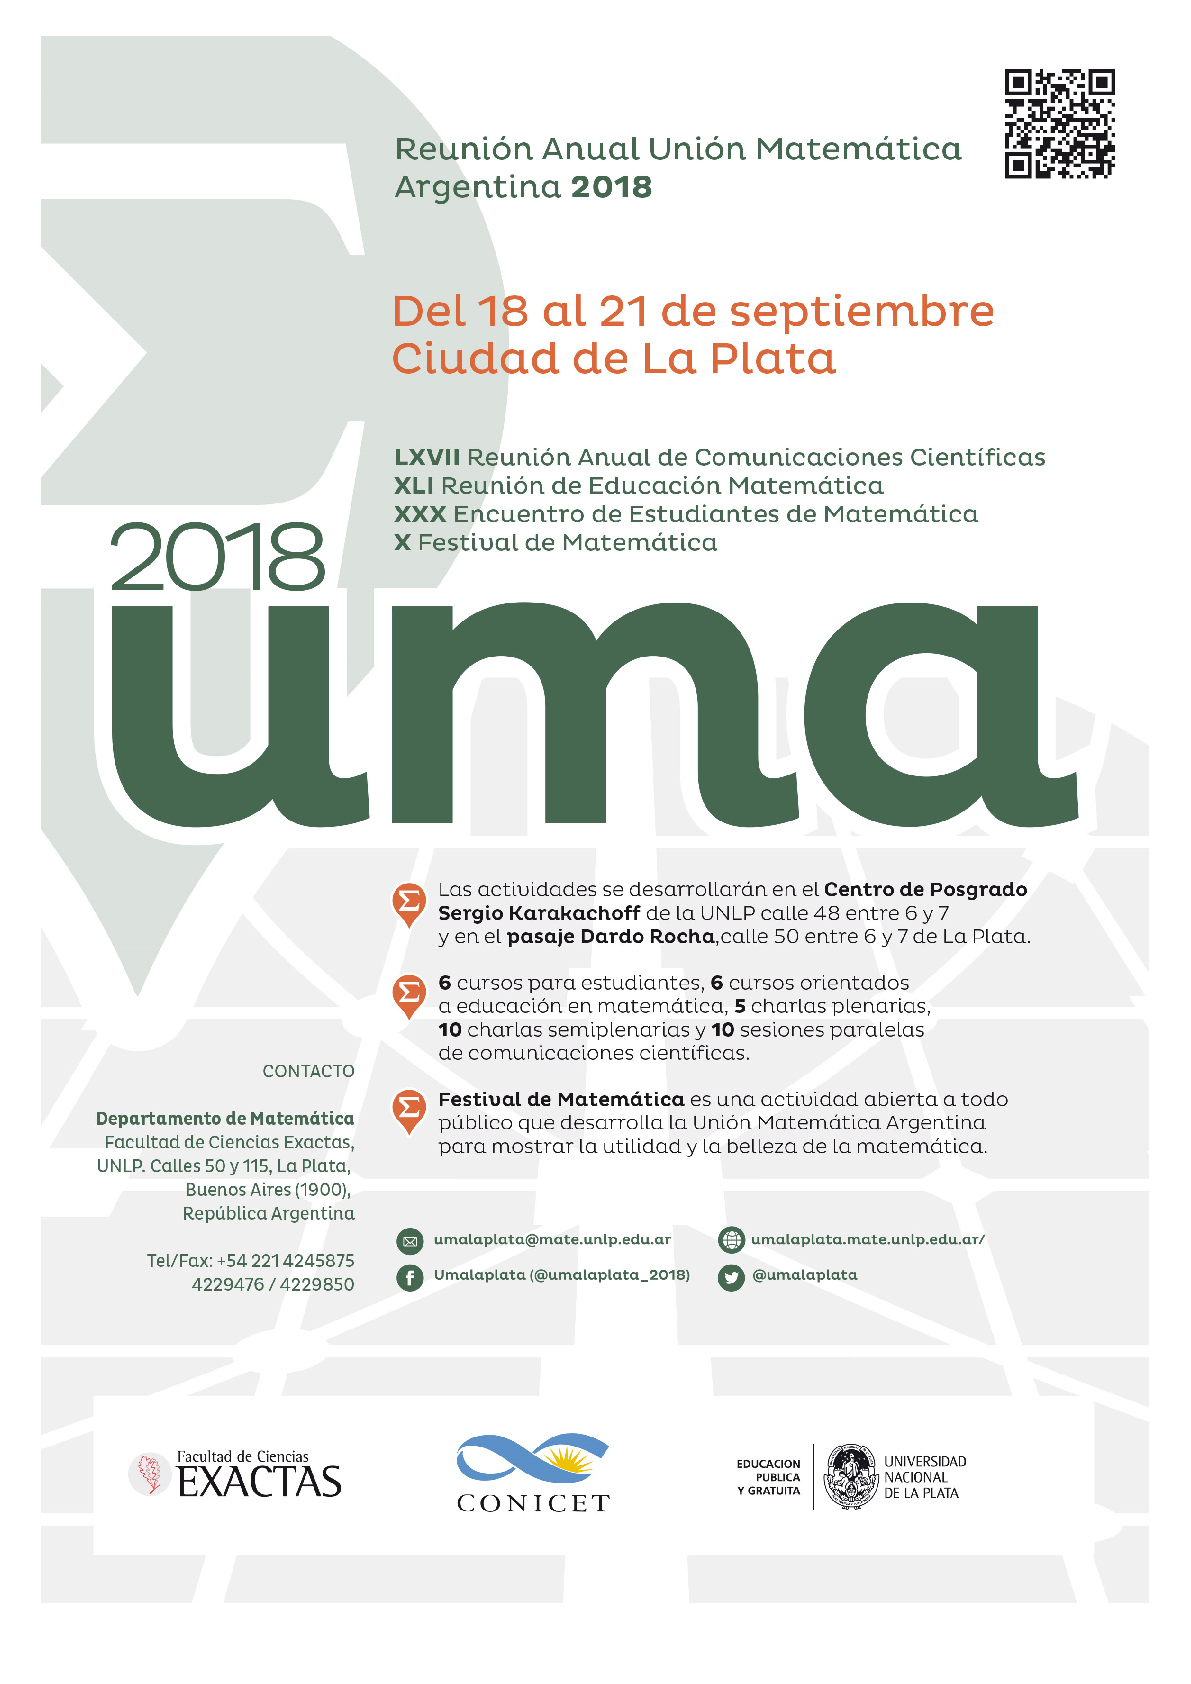 Reunión Anual de la Unión Matemática Argentina